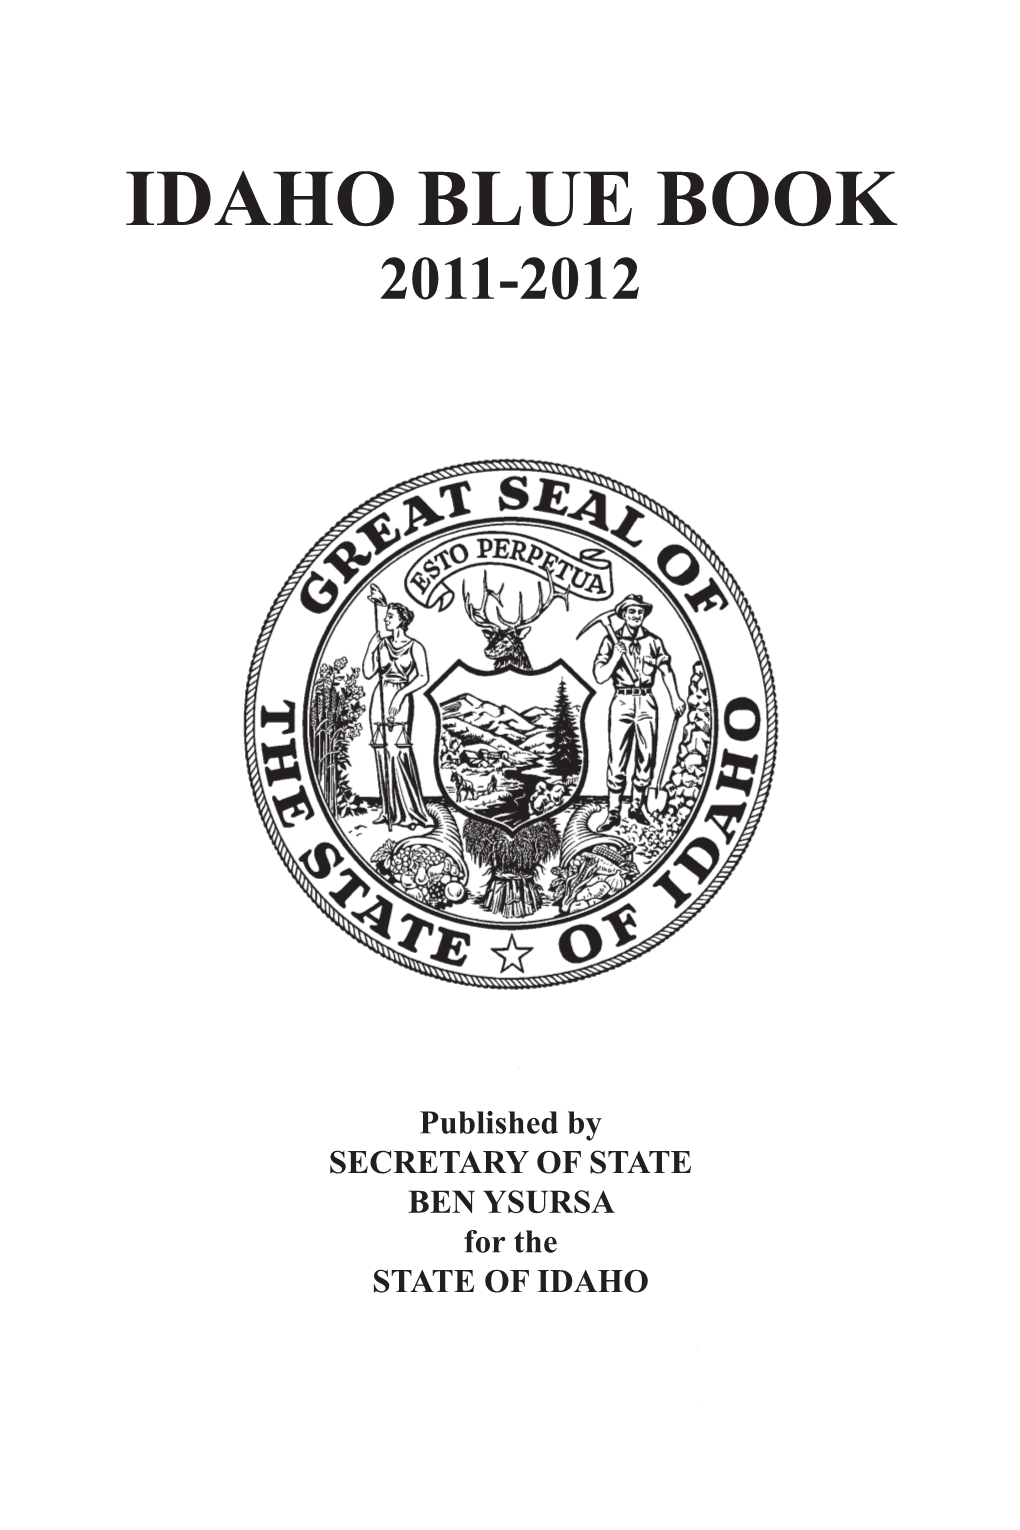 Idaho Blue Book 2011-2012